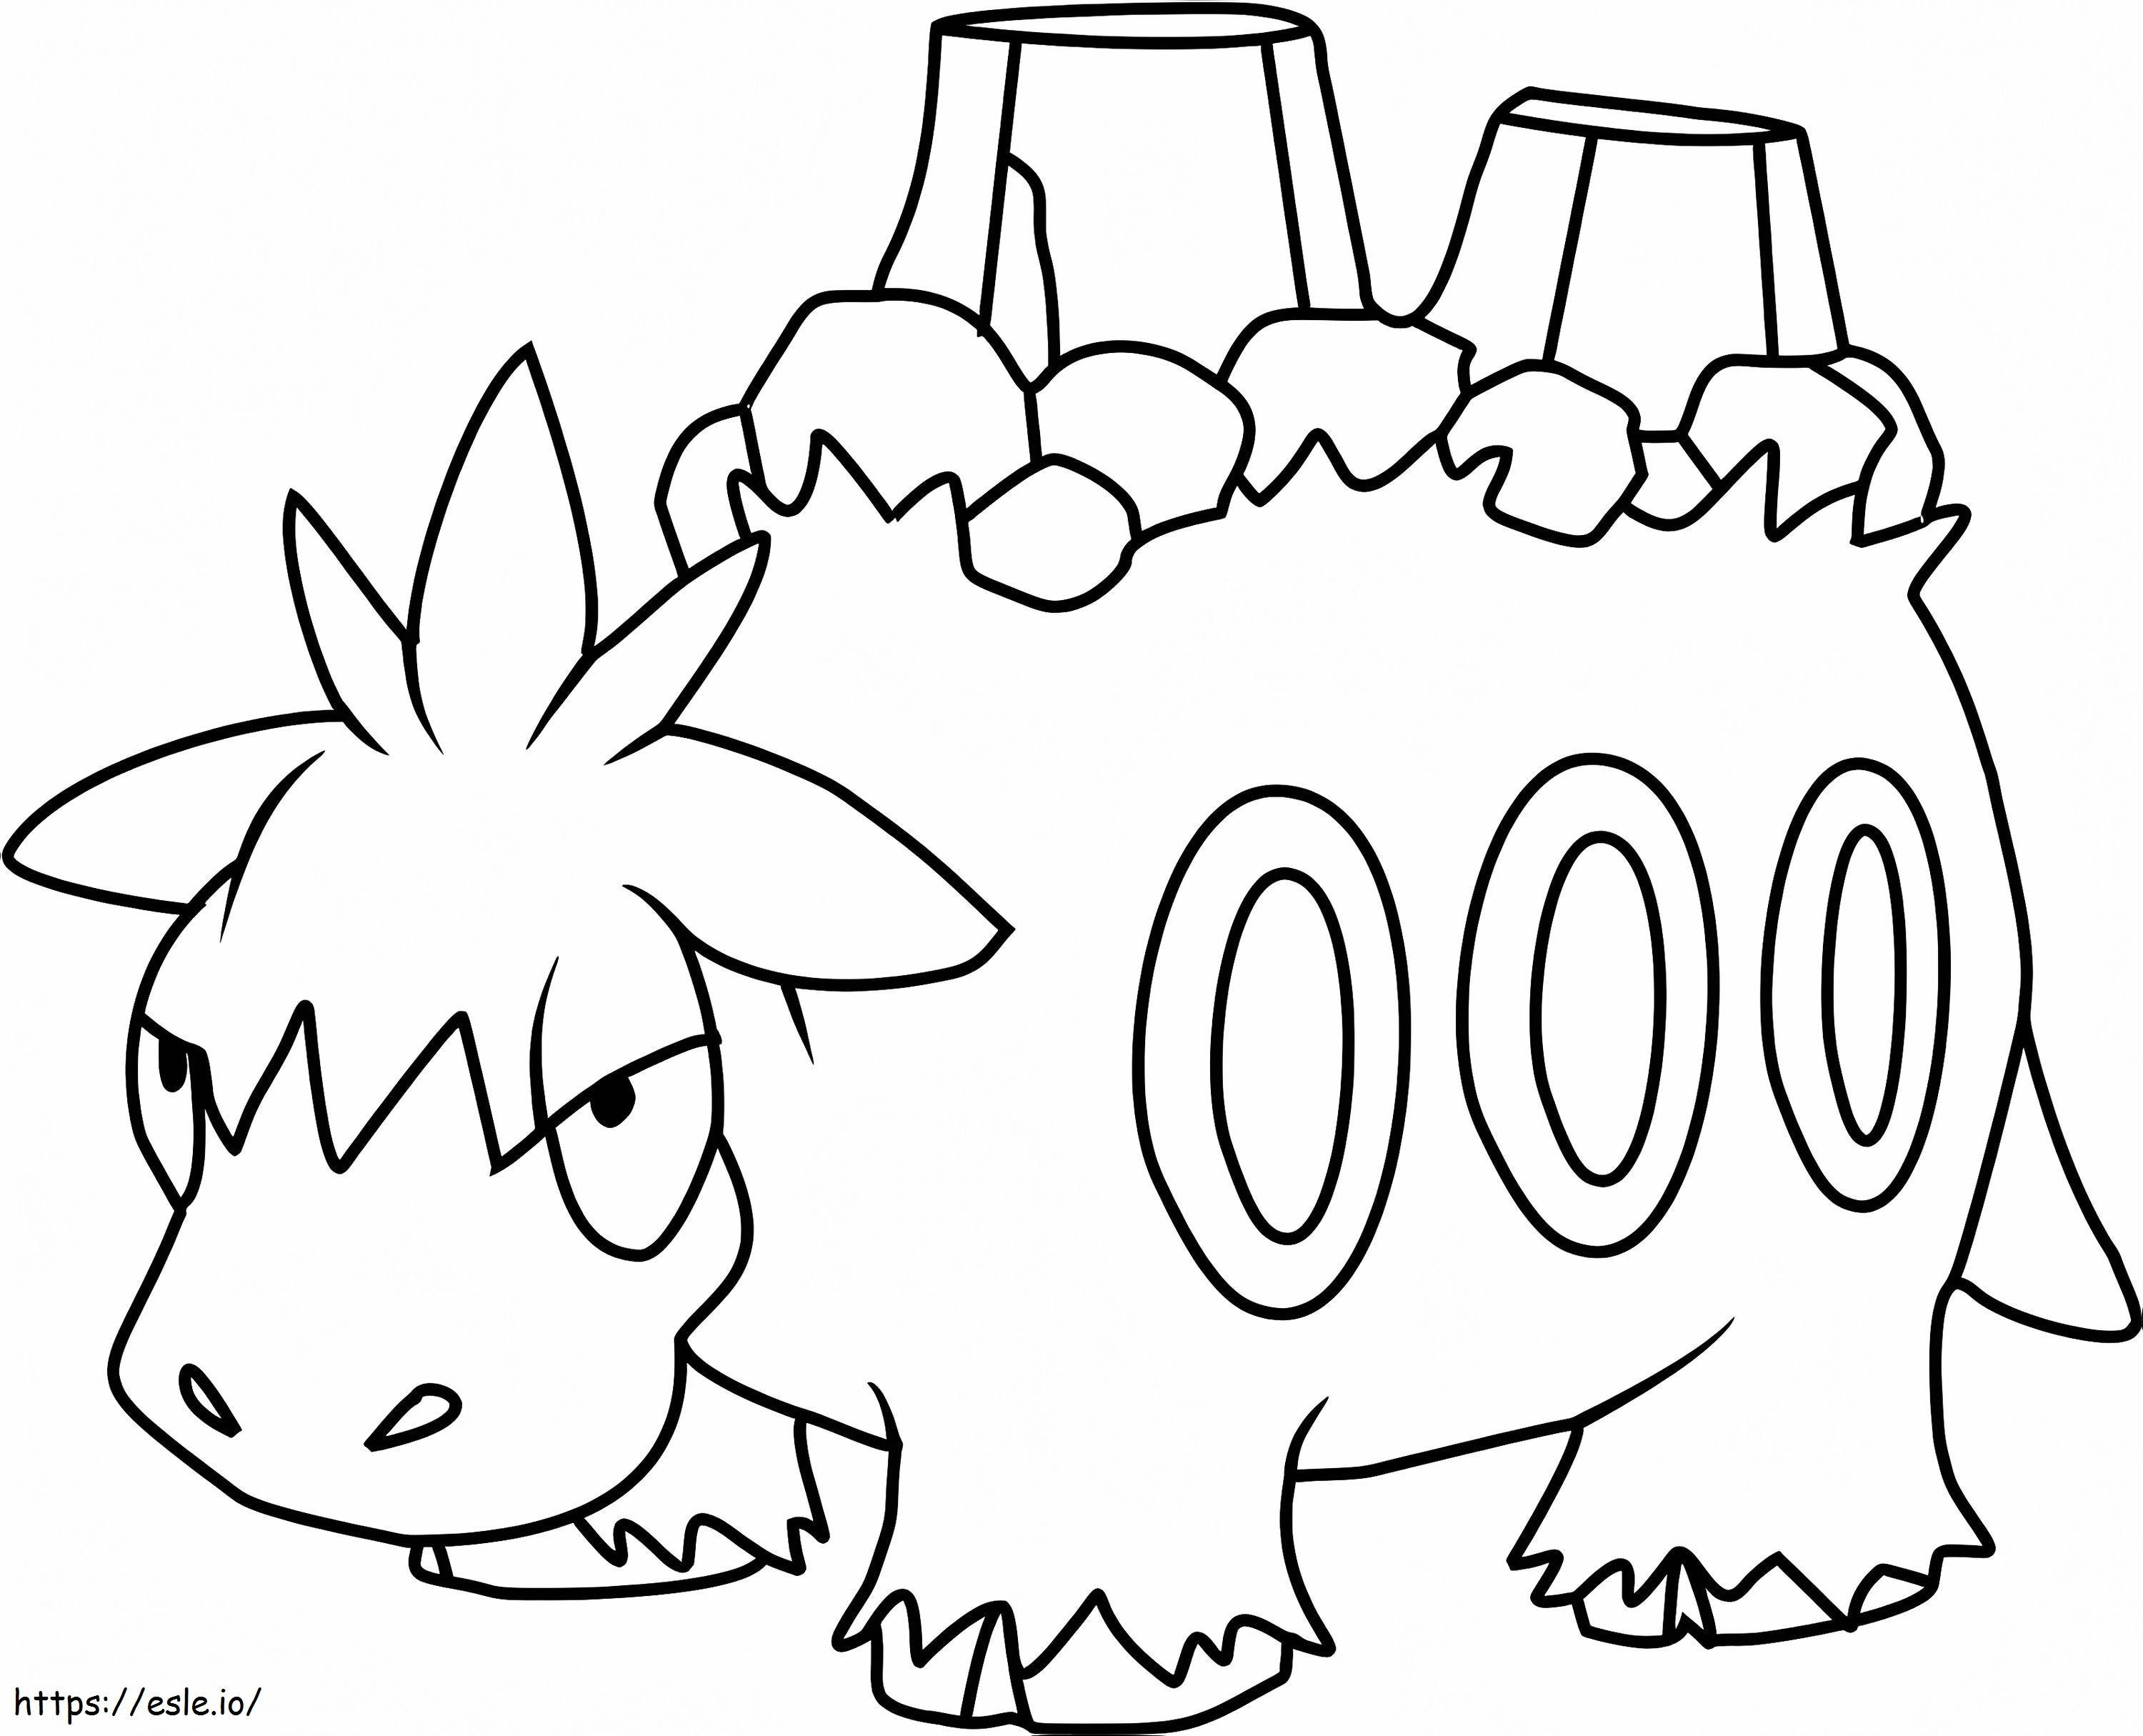 Coloriage Pokémon Camerupt Gen 3 à imprimer dessin